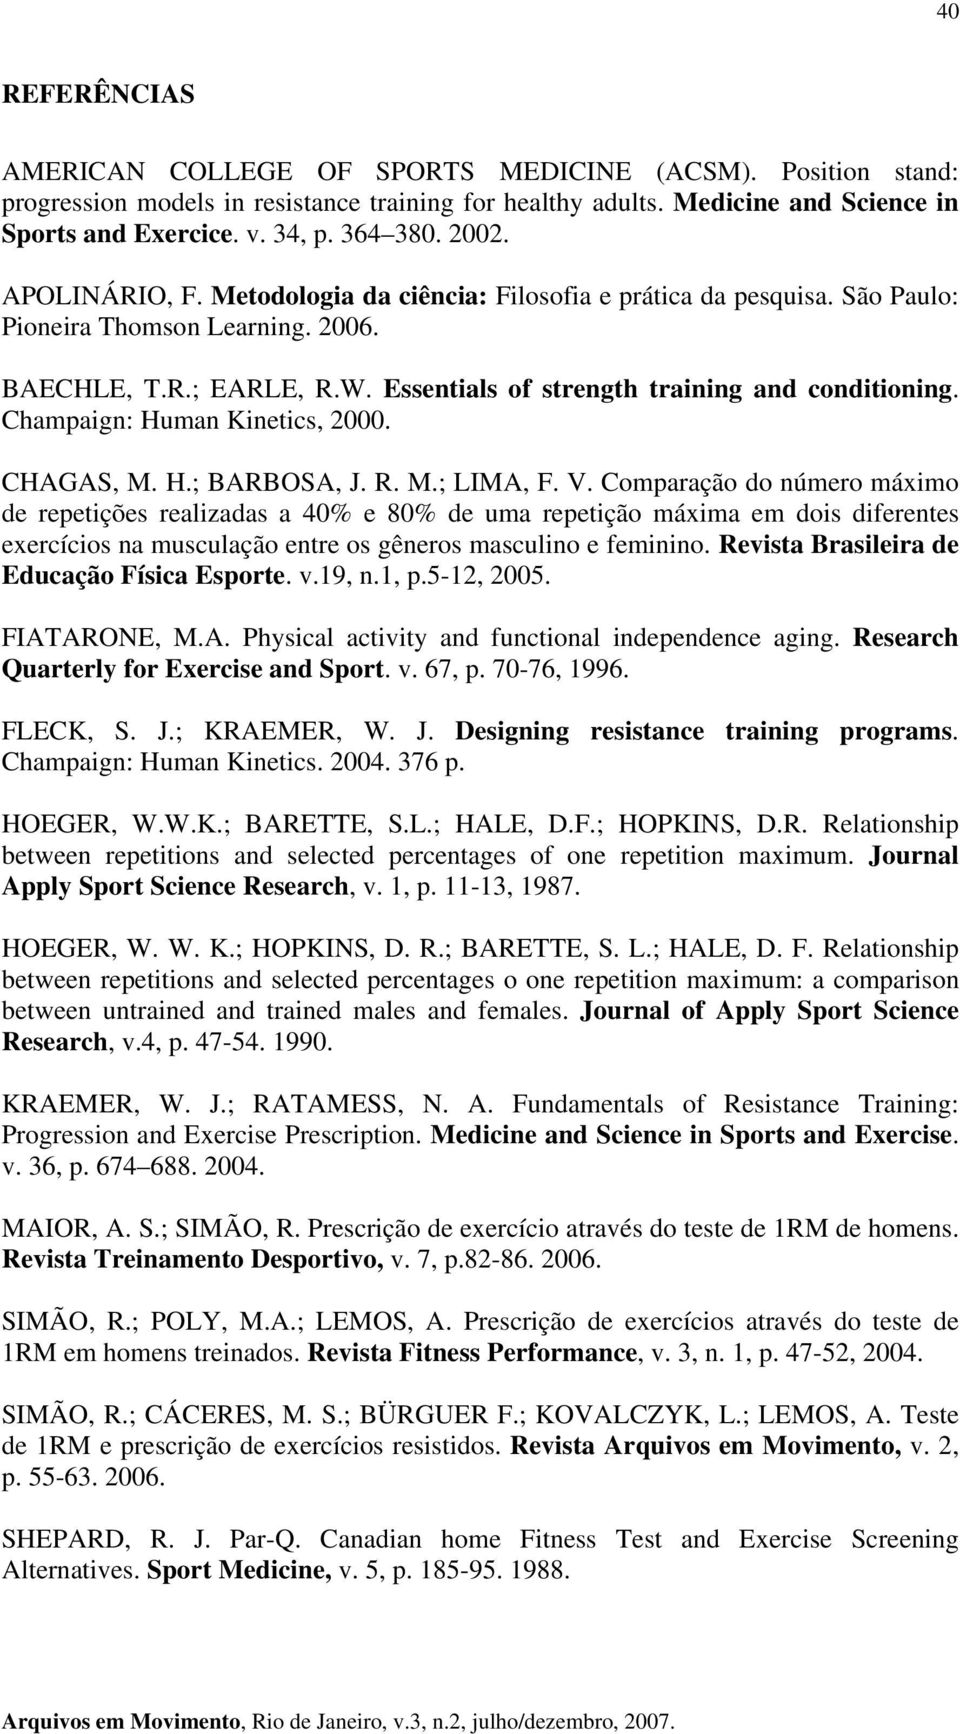 Champaign: Human Kinetics, 2000. CHAGAS, M. H.; BARBOSA, J. R. M.; LIMA, F. V.